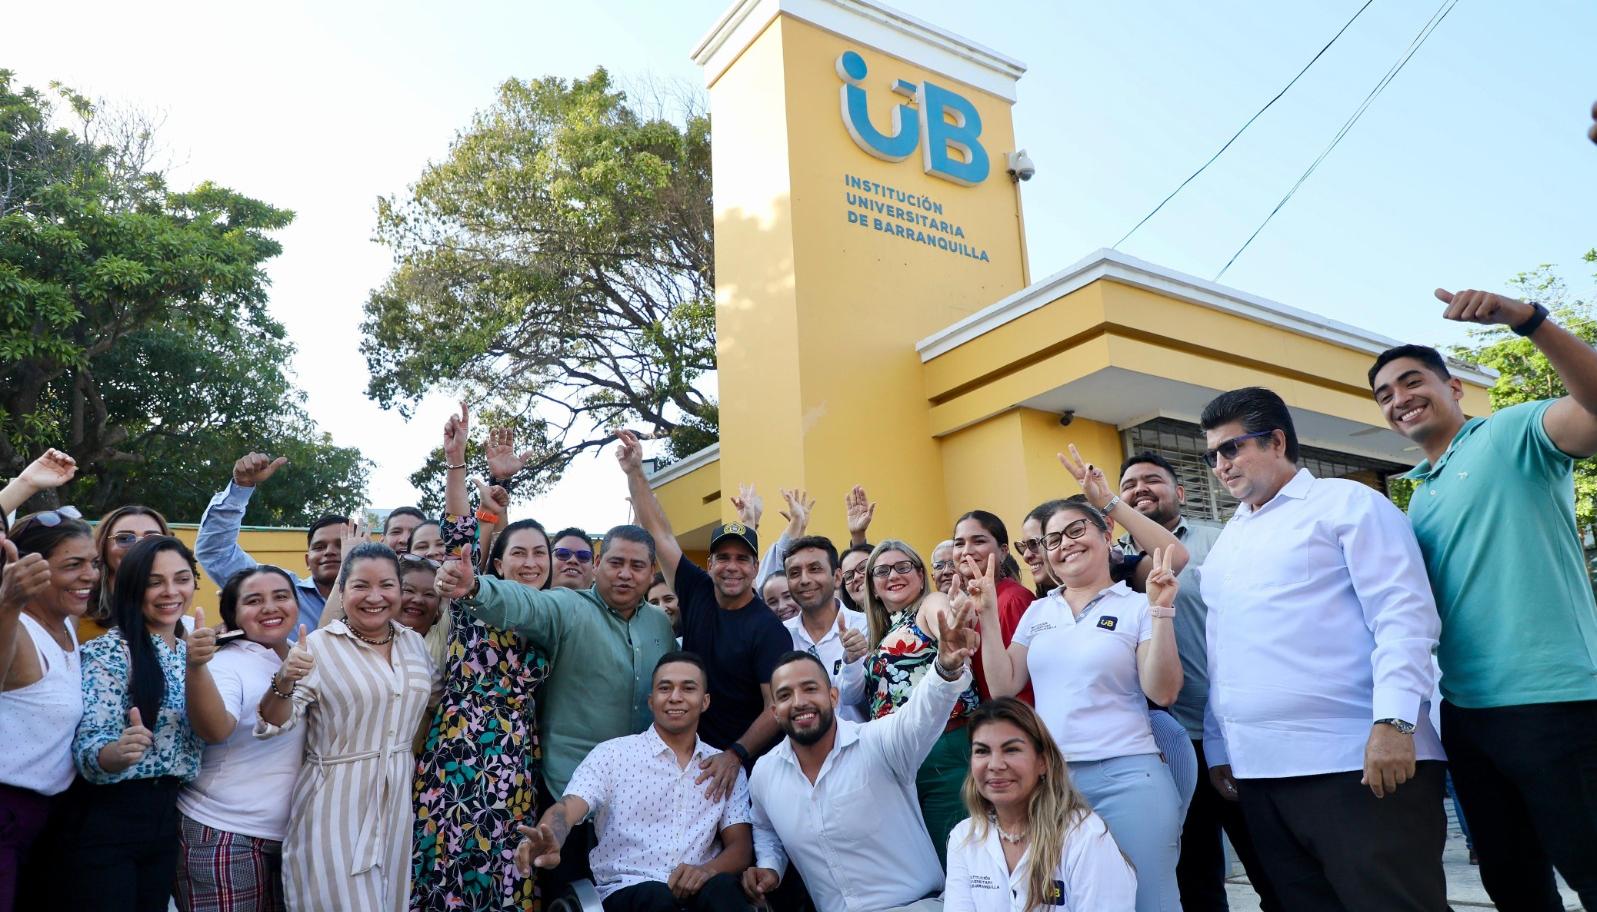 Institución Universitaria de Barranquilla. 